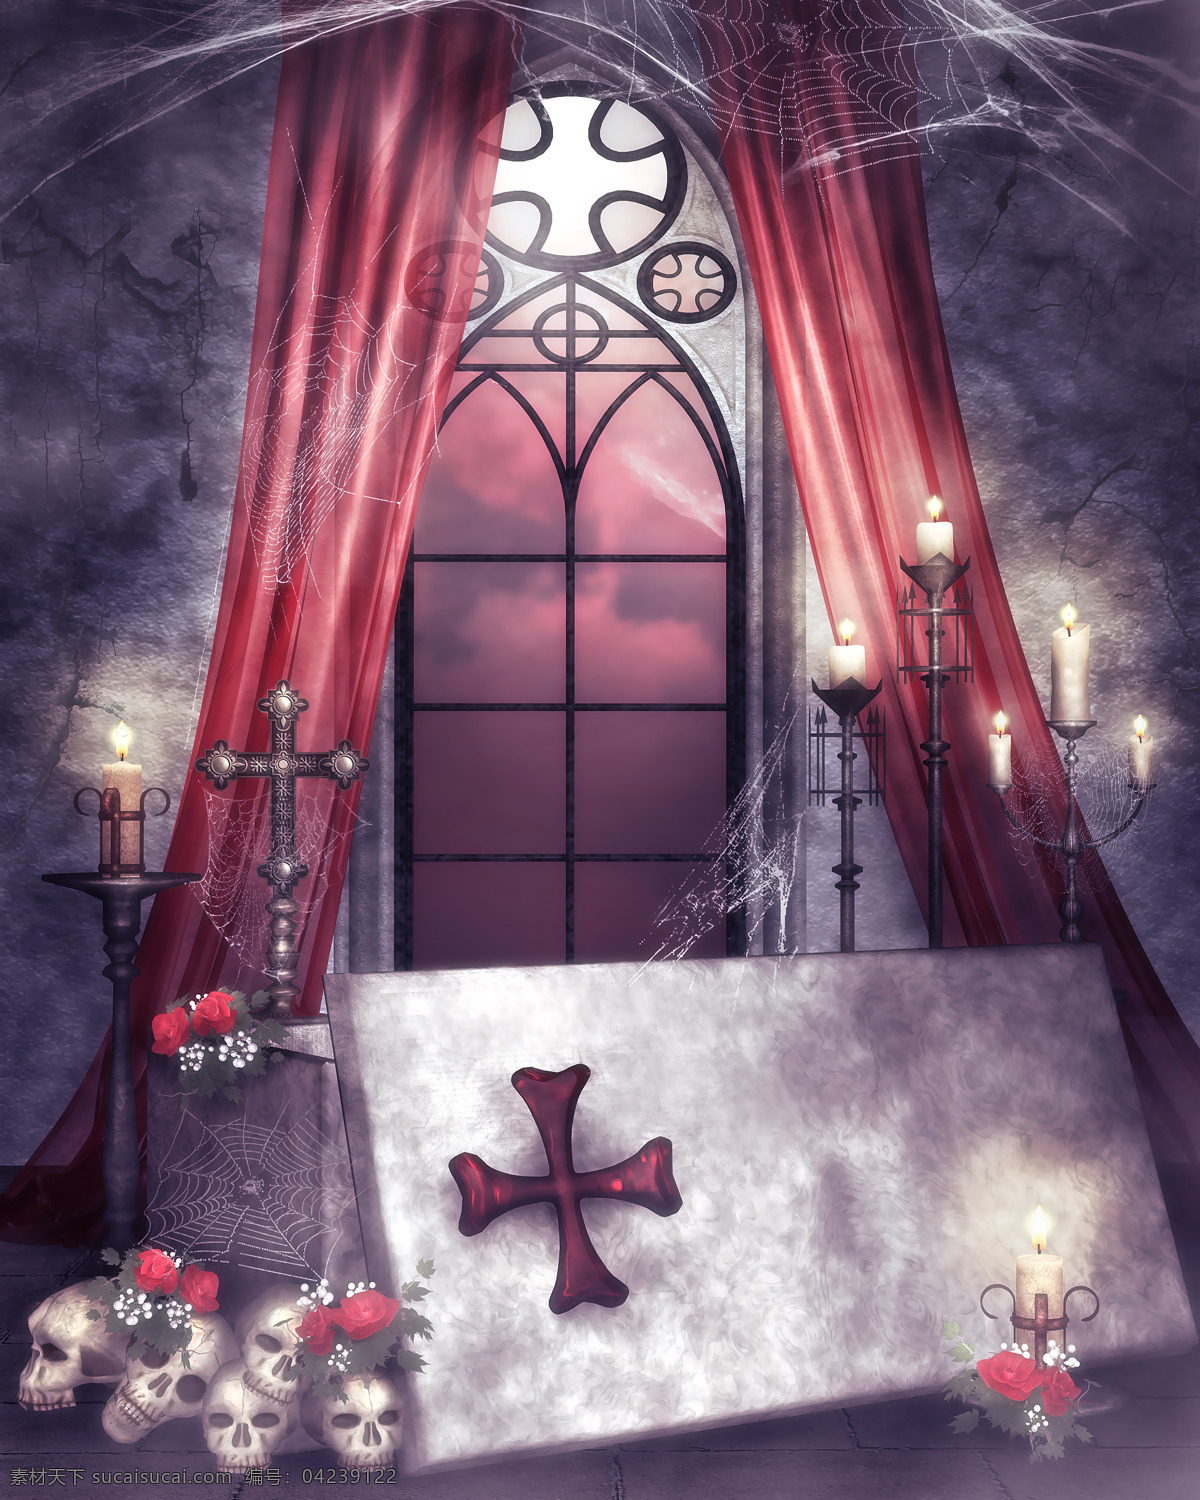 染 血 十字架 骷髅头 玫瑰花 蜘蛛网 红色十字架 废弃的教堂 童话场景 背景图片